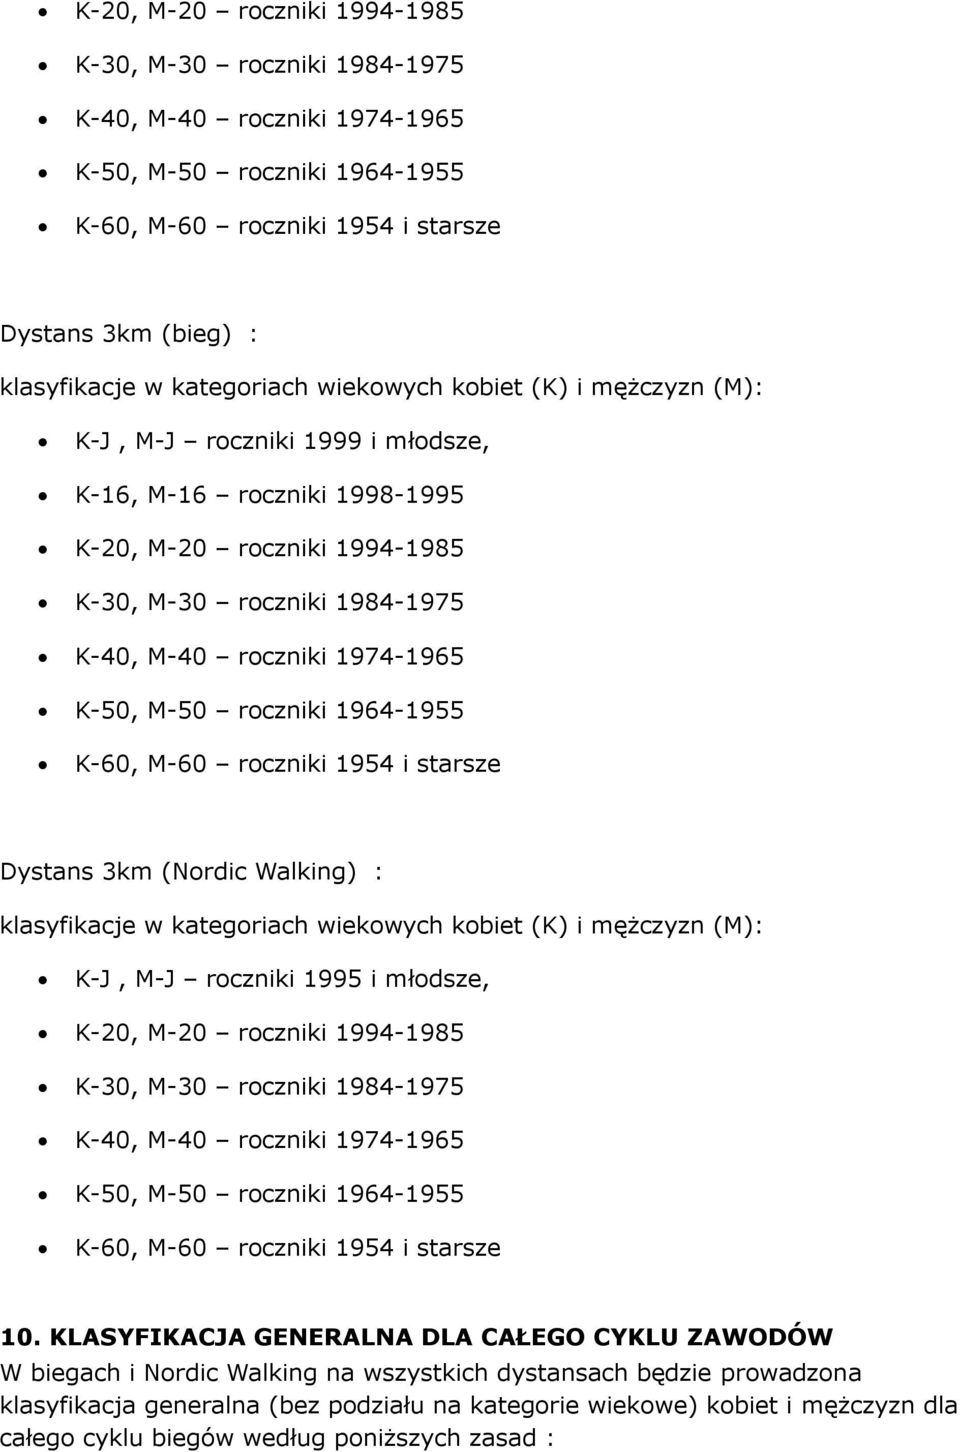 1974-1965 K-50, M-50 roczniki 1964-1955 K-60, M-60 roczniki 1954 i starsze Dystans 3km (Nordic Walking) : klasyfikacje w kategoriach wiekowych kobiet (K) i mężczyzn (M): K-J, M-J roczniki 1995 i